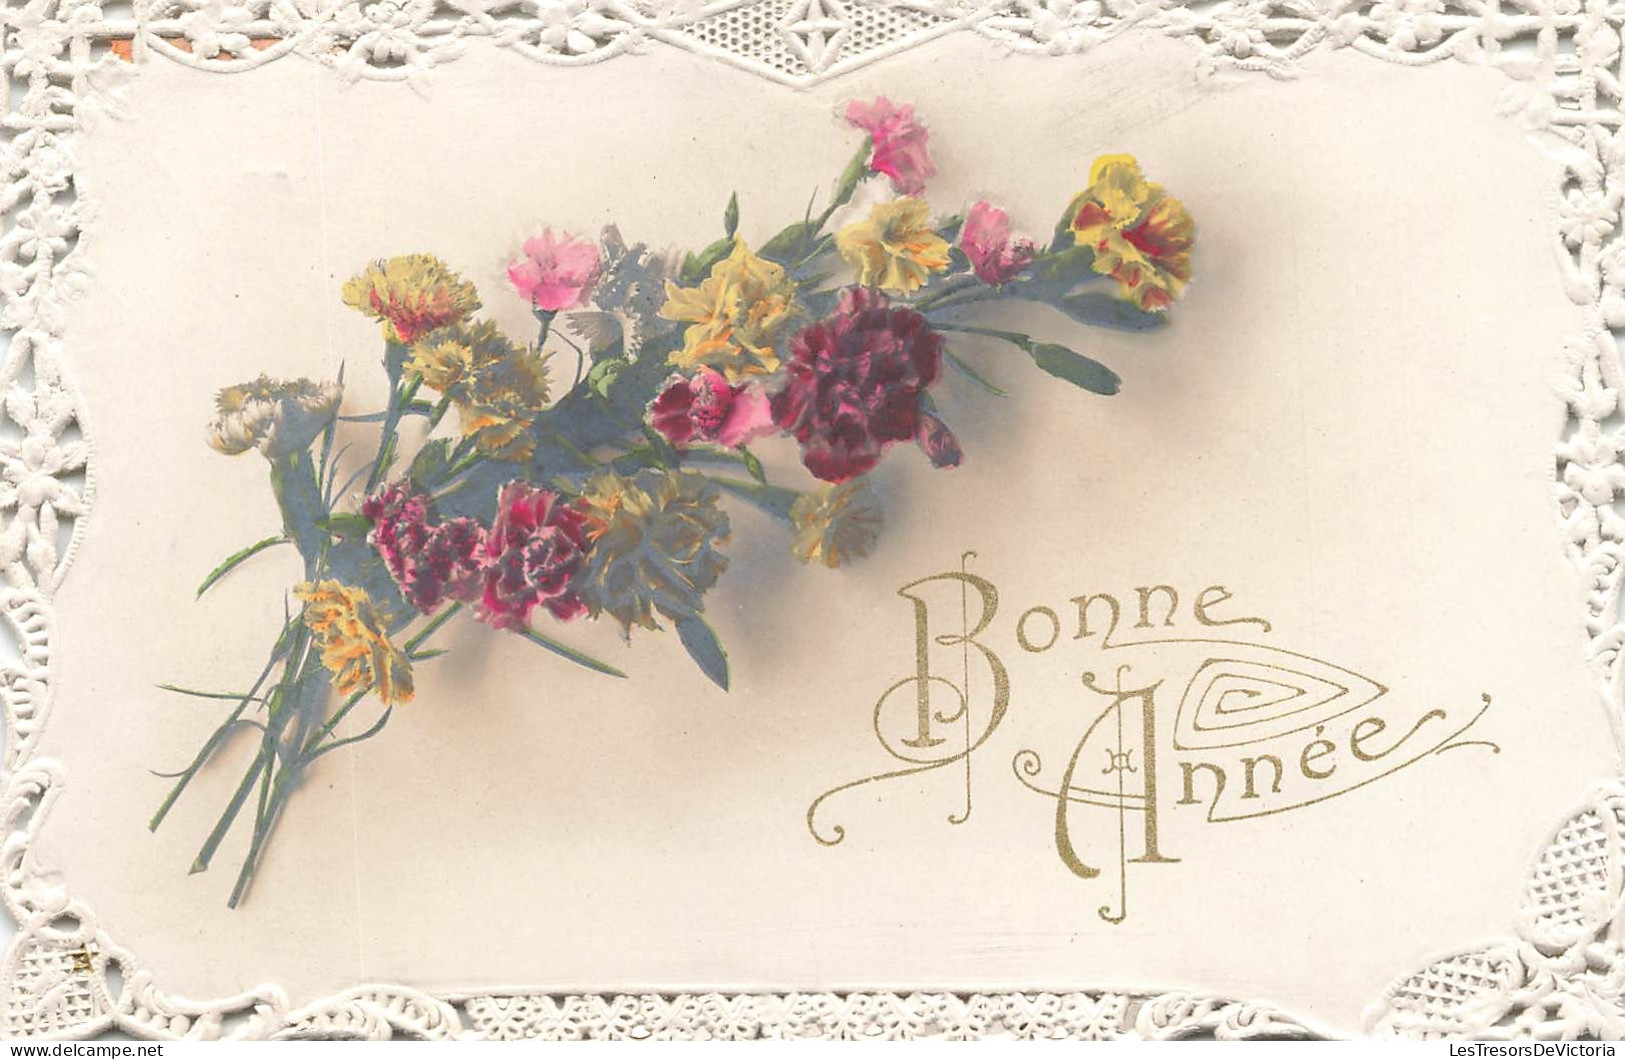 FETES - VOEUX - Bonne Année - Fleurs - Carte Postale Ancienne - Nouvel An